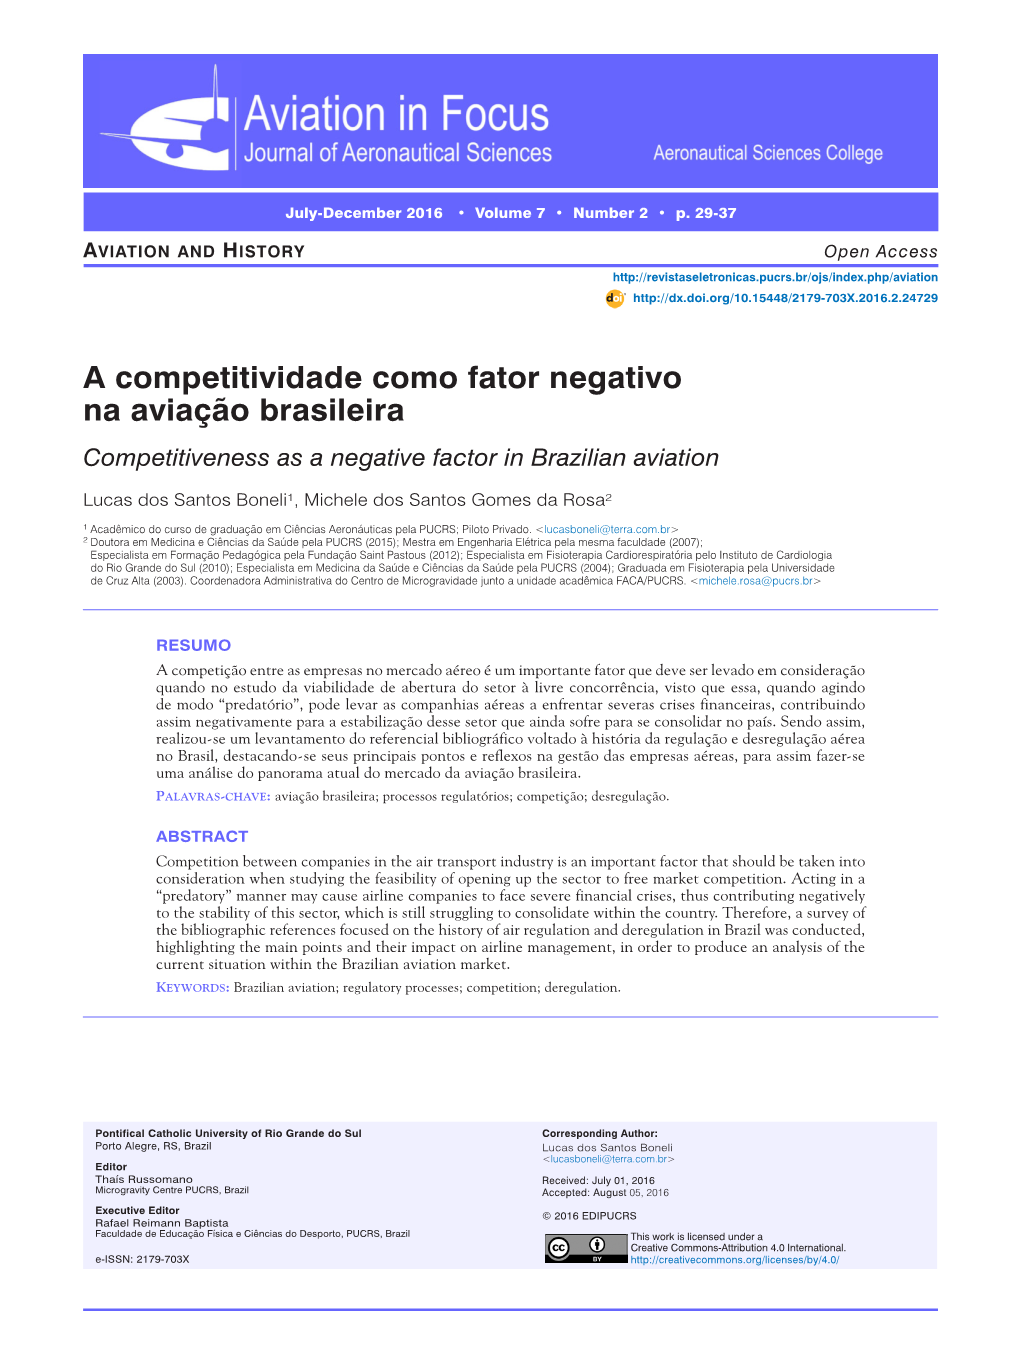 A Competitividade Como Fator Negativo Na Aviação Brasileira Competitiveness As a Negative Factor in Brazilian Aviation